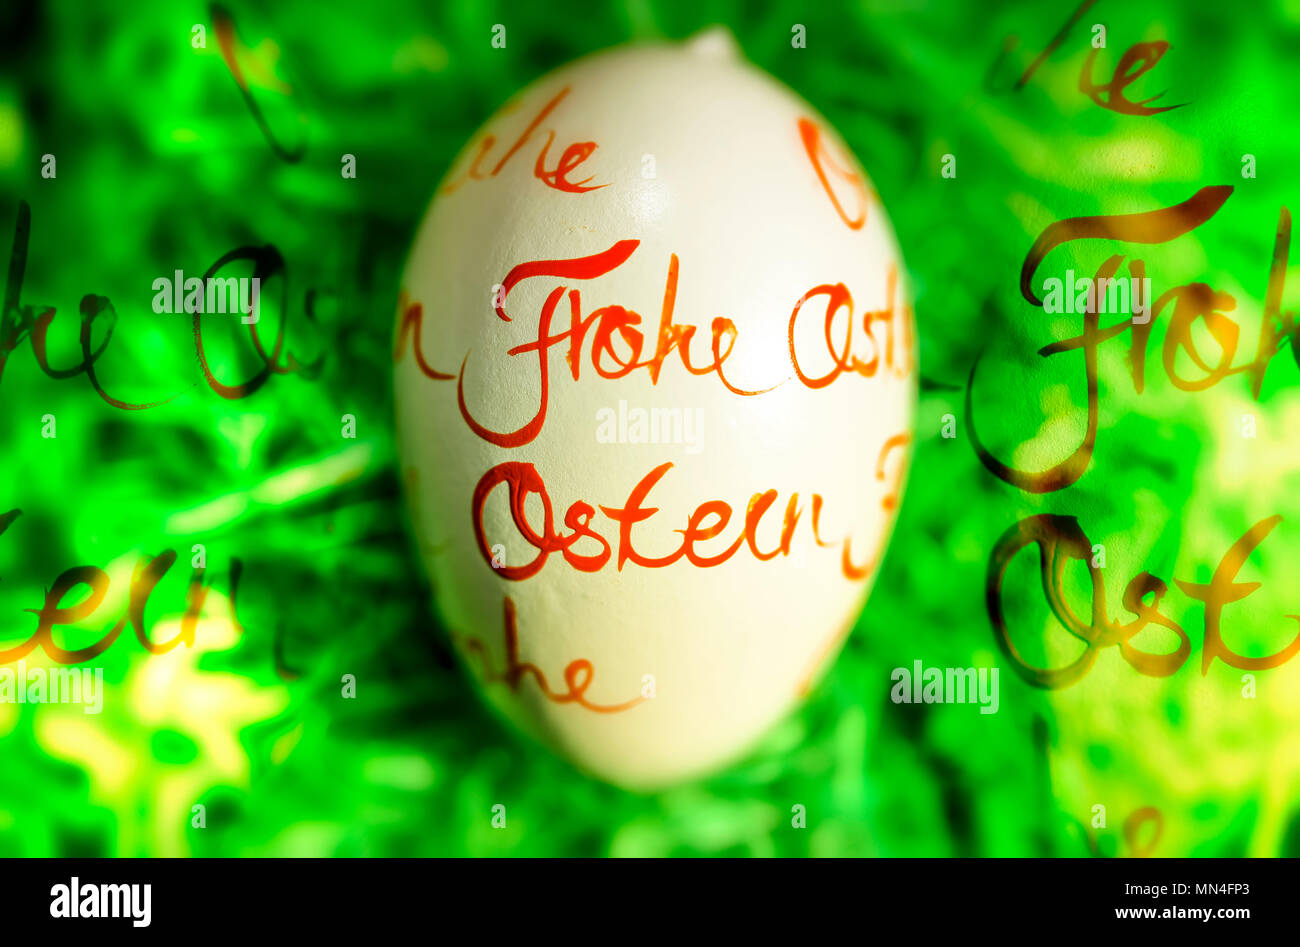 Huevo de pascua con la inscripción Felices Pascuas, mit der Aufschrift Osterei Frohe Ostern Foto de stock